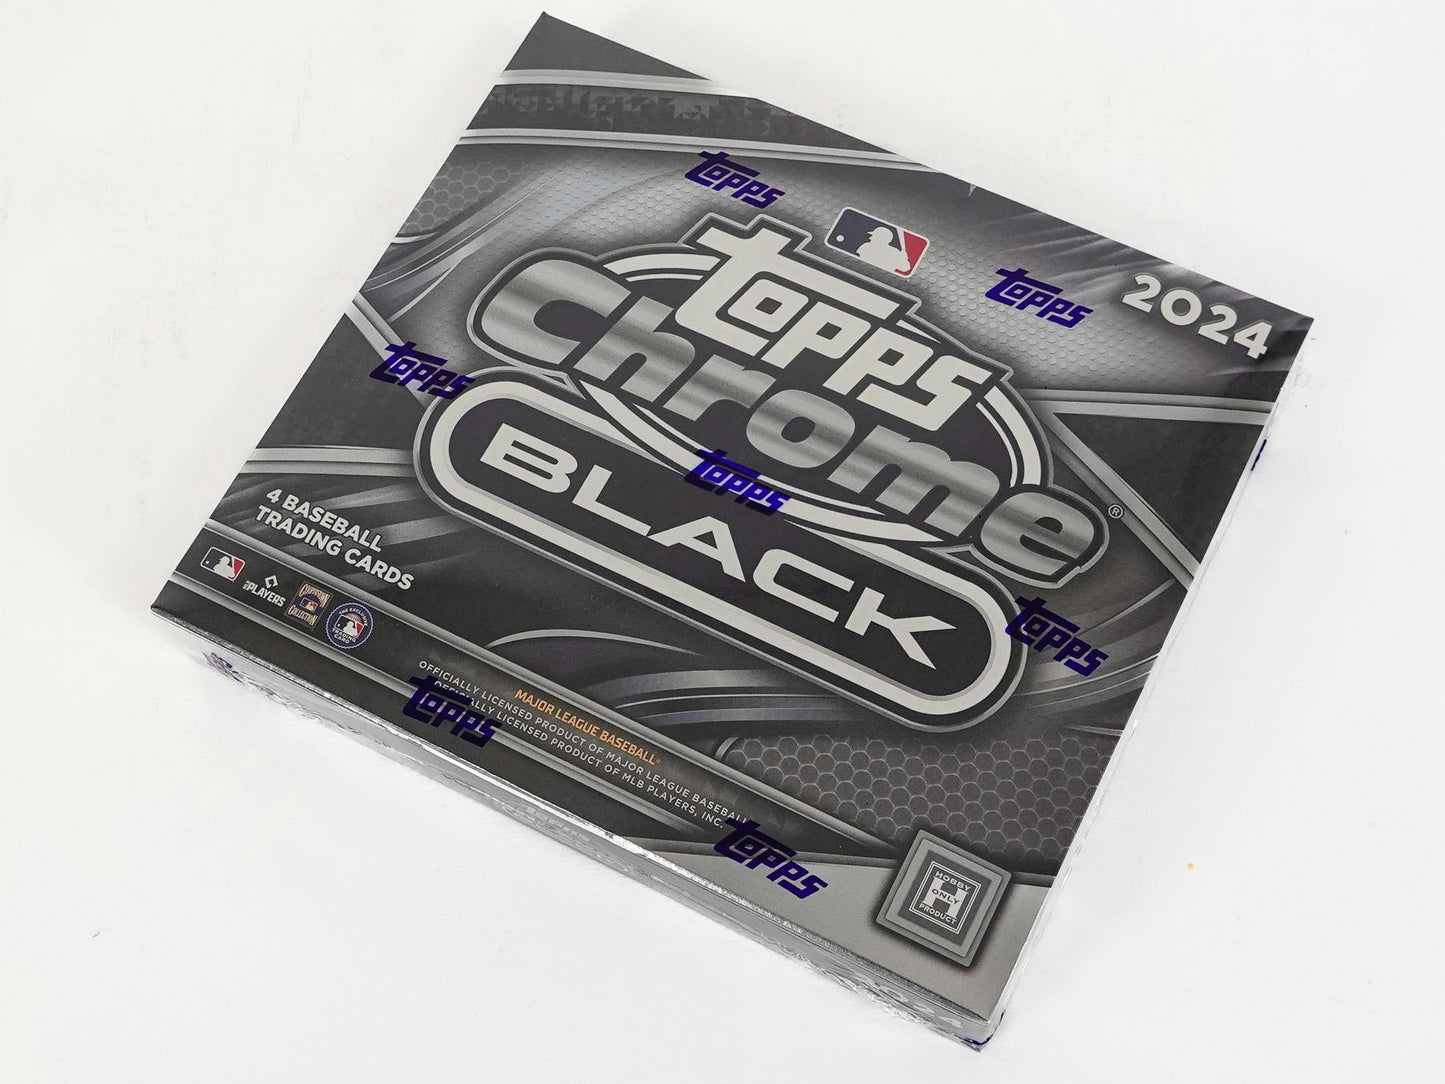 2024 Topps Chrome Black Baseball, Hobby Box